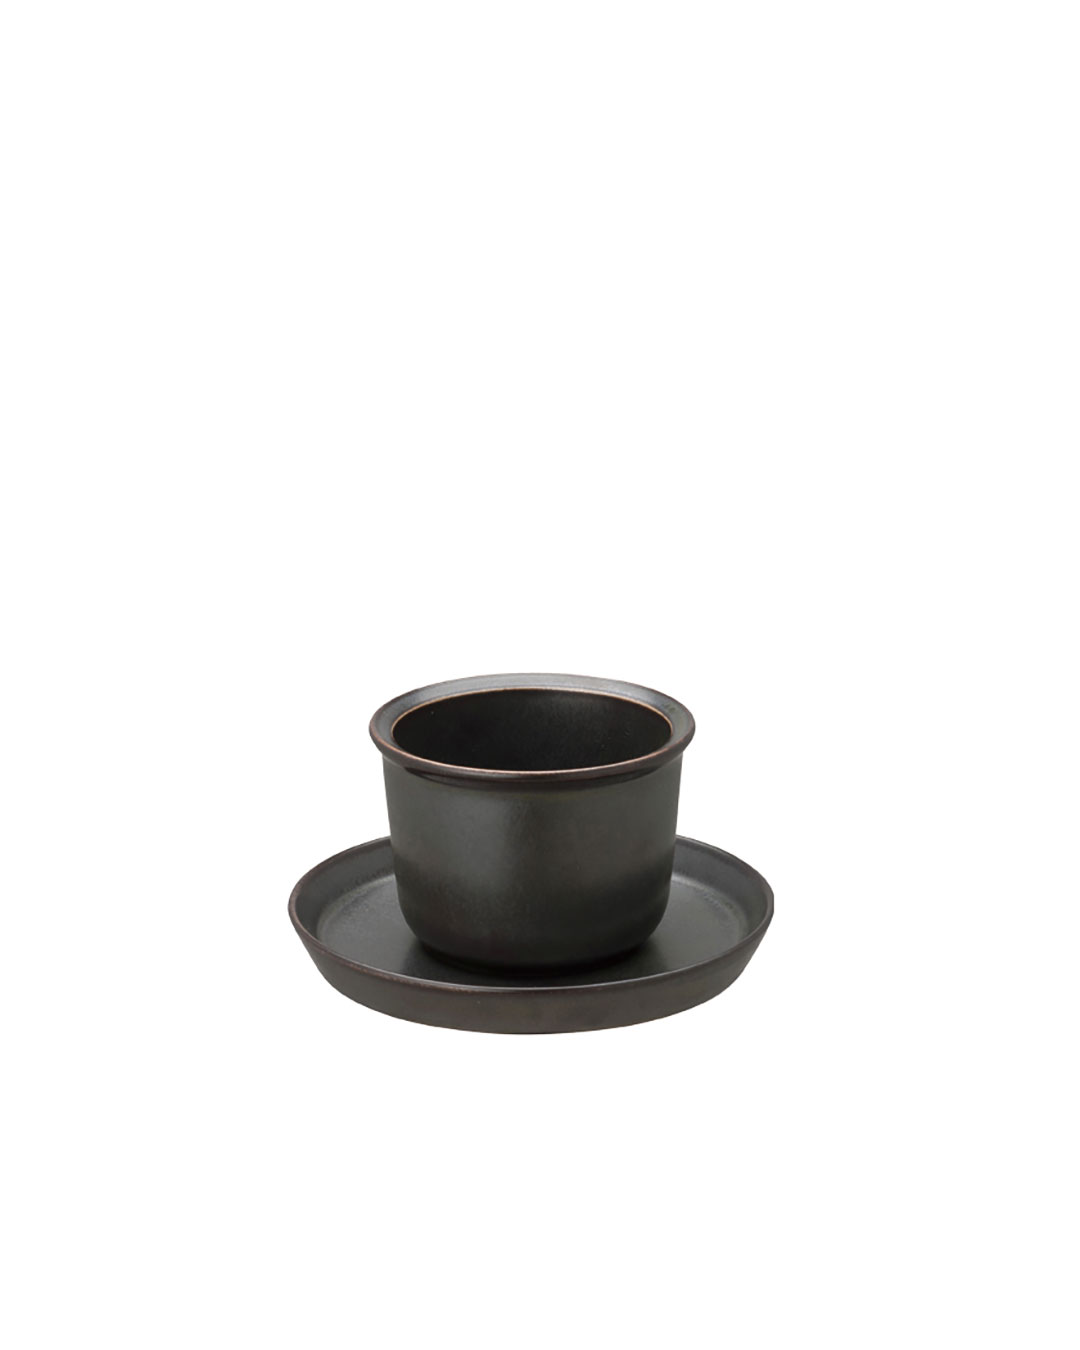 Mörk liten kopp och fat i serien Leaves to Tea från Kinto hos Cobosabi.